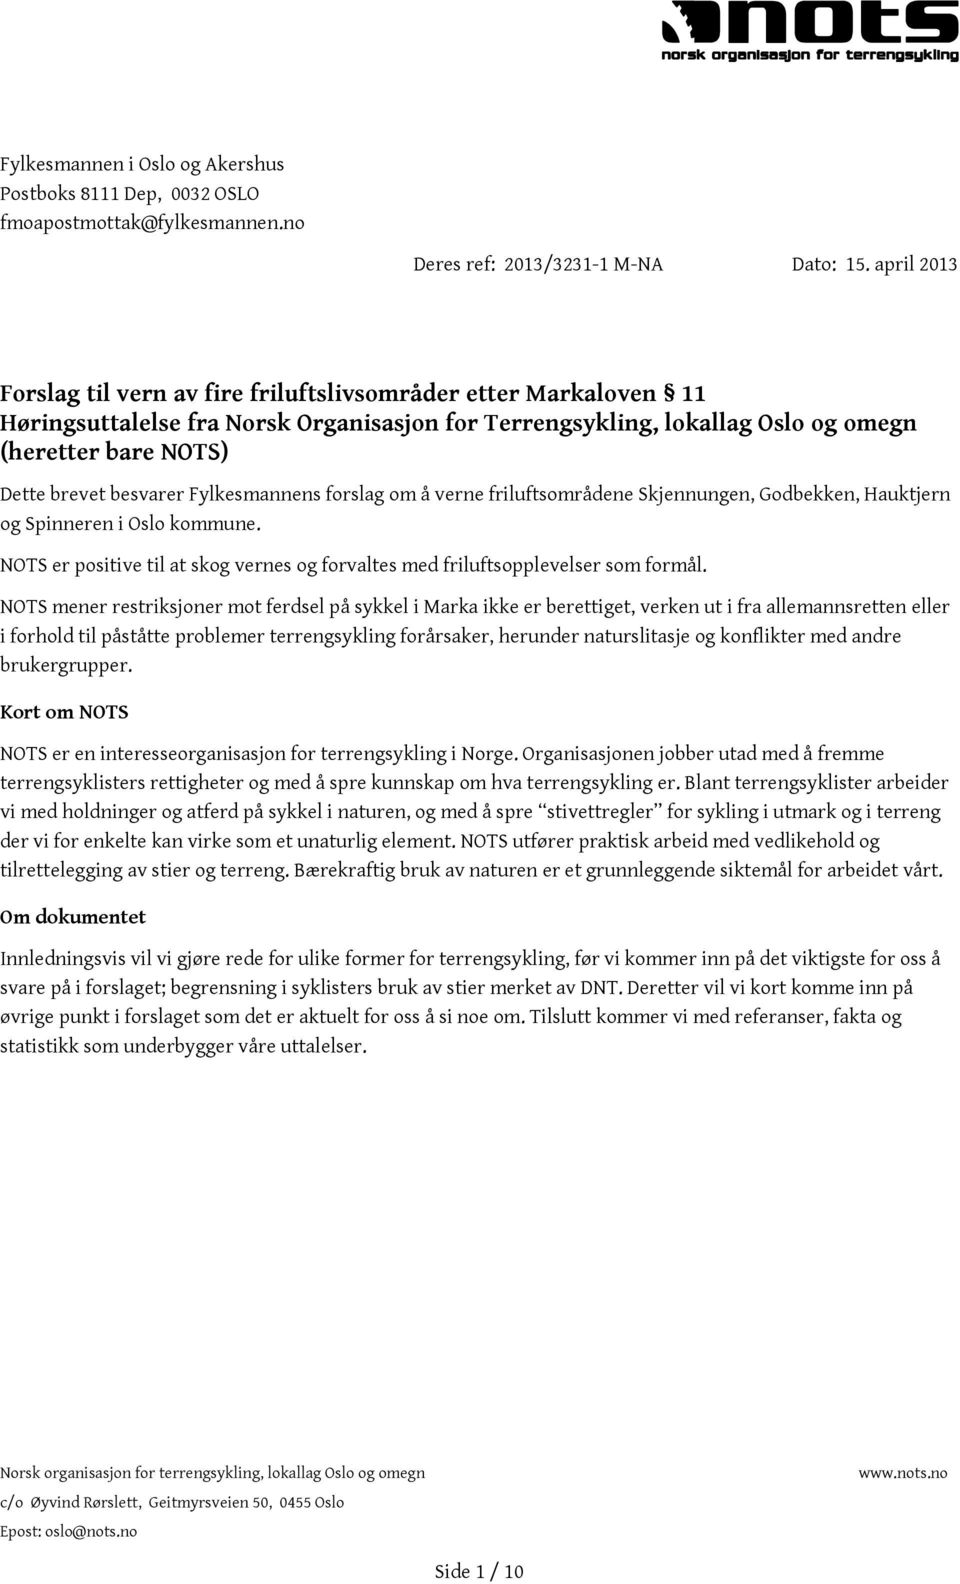 besvarer Fylkesmannens forslag om å verne friluftsområdene Skjennungen, Godbekken, Hauktjern og Spinneren i Oslo kommune.